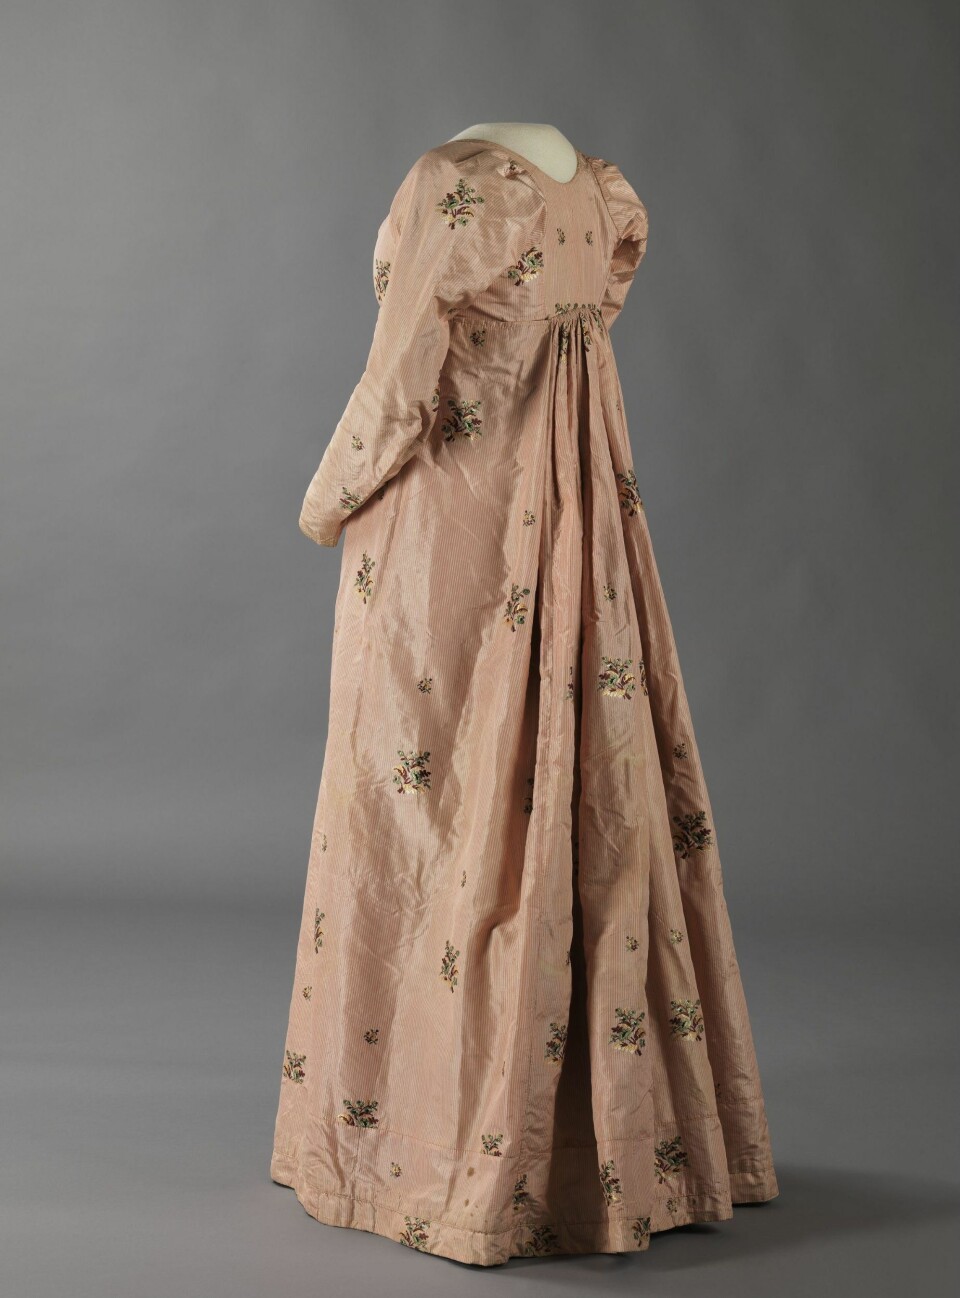 Denne kjolen har en fasong fra 1800-1810-tallet, men silkestoffet er fra 1780-tallet. (Foto: Nasjonalmuseet for kunst, arkitektur og design)